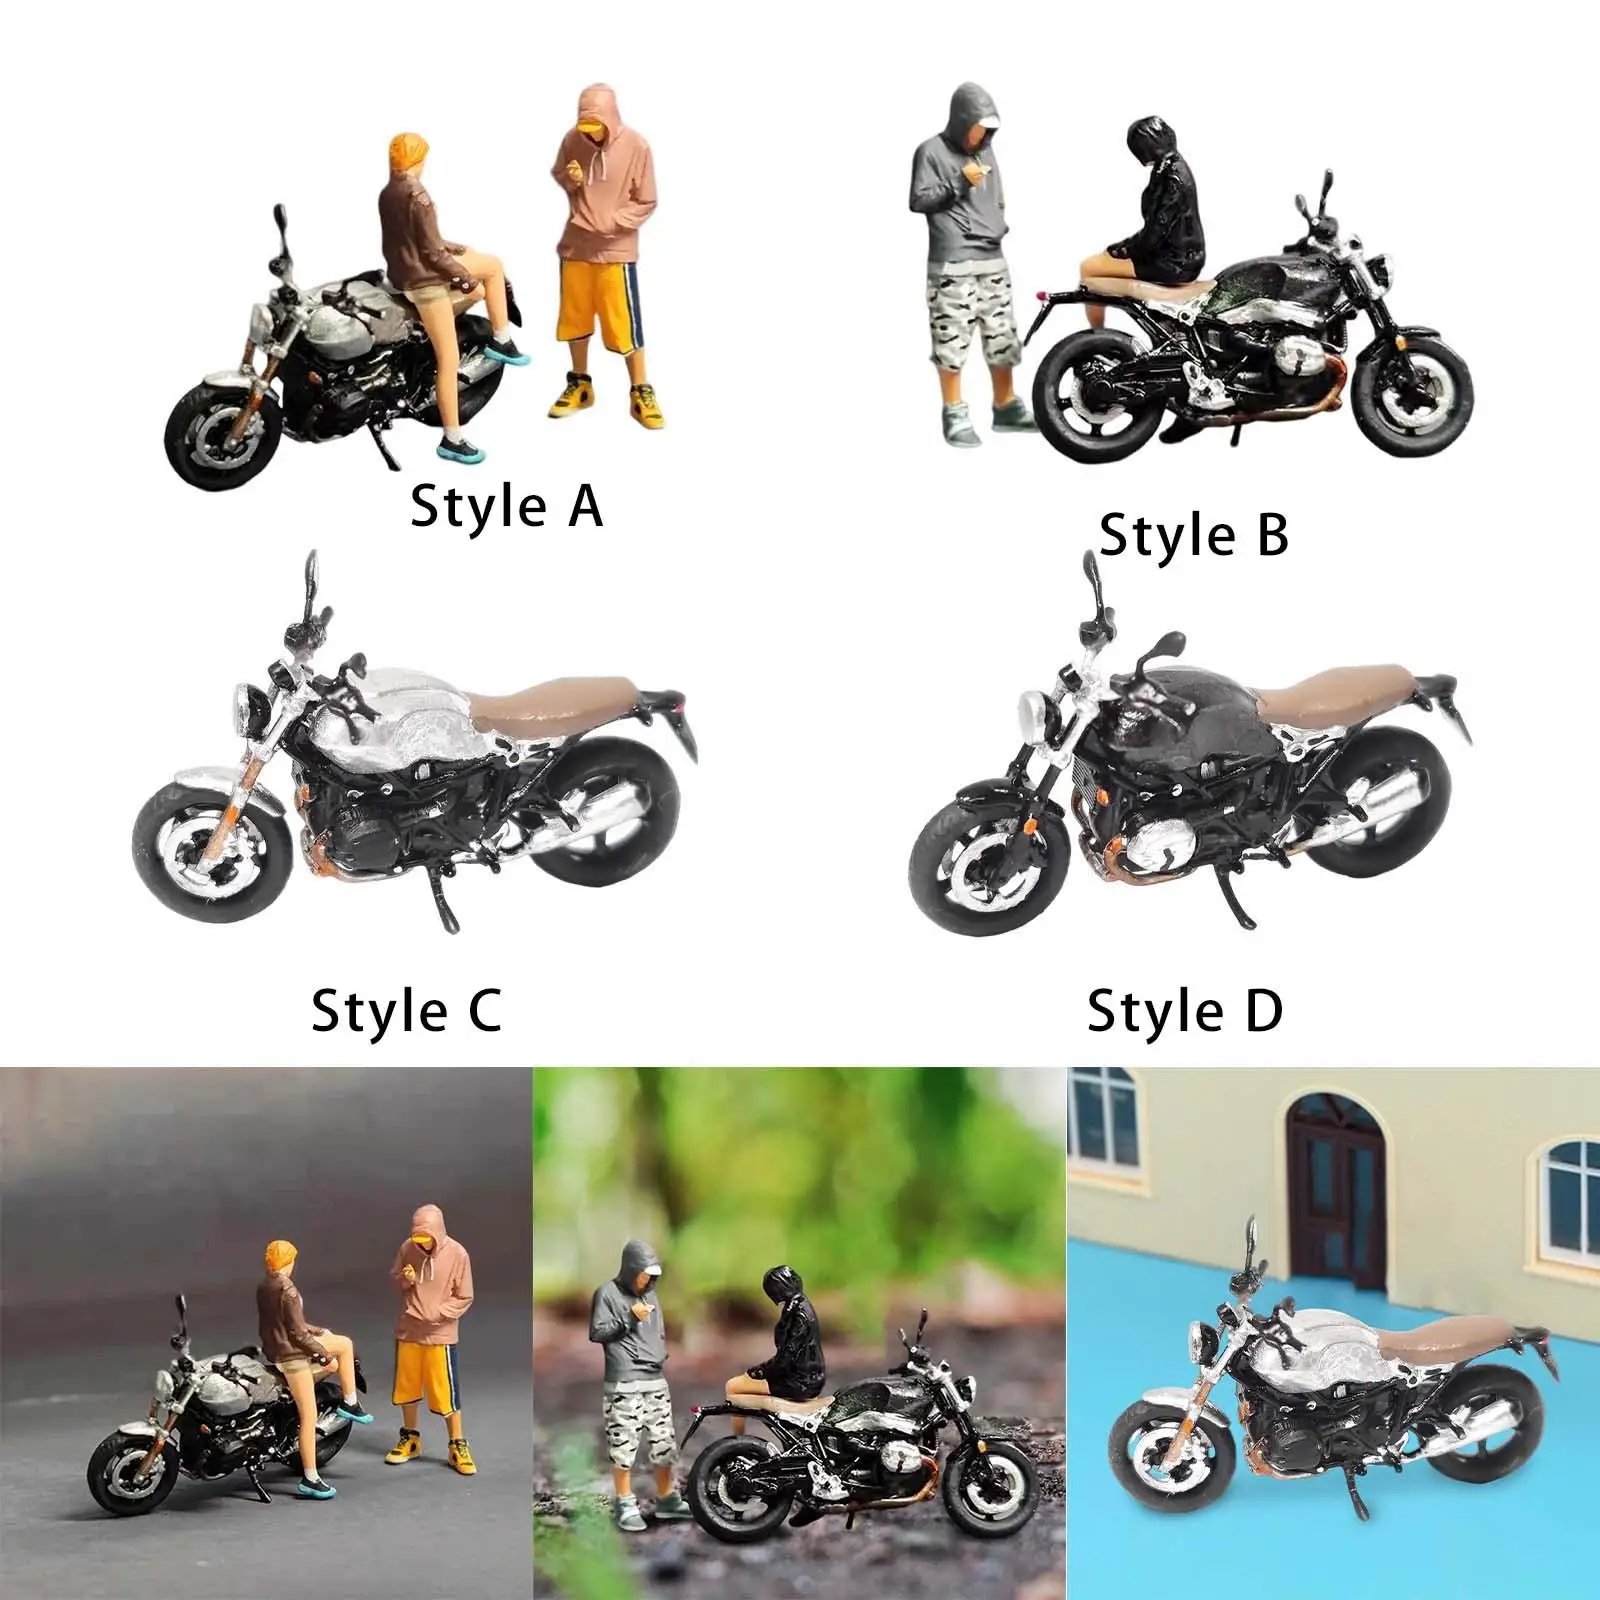 1/64 Figures Motorcycle Architecture Model Desktop Ornament Miniatures